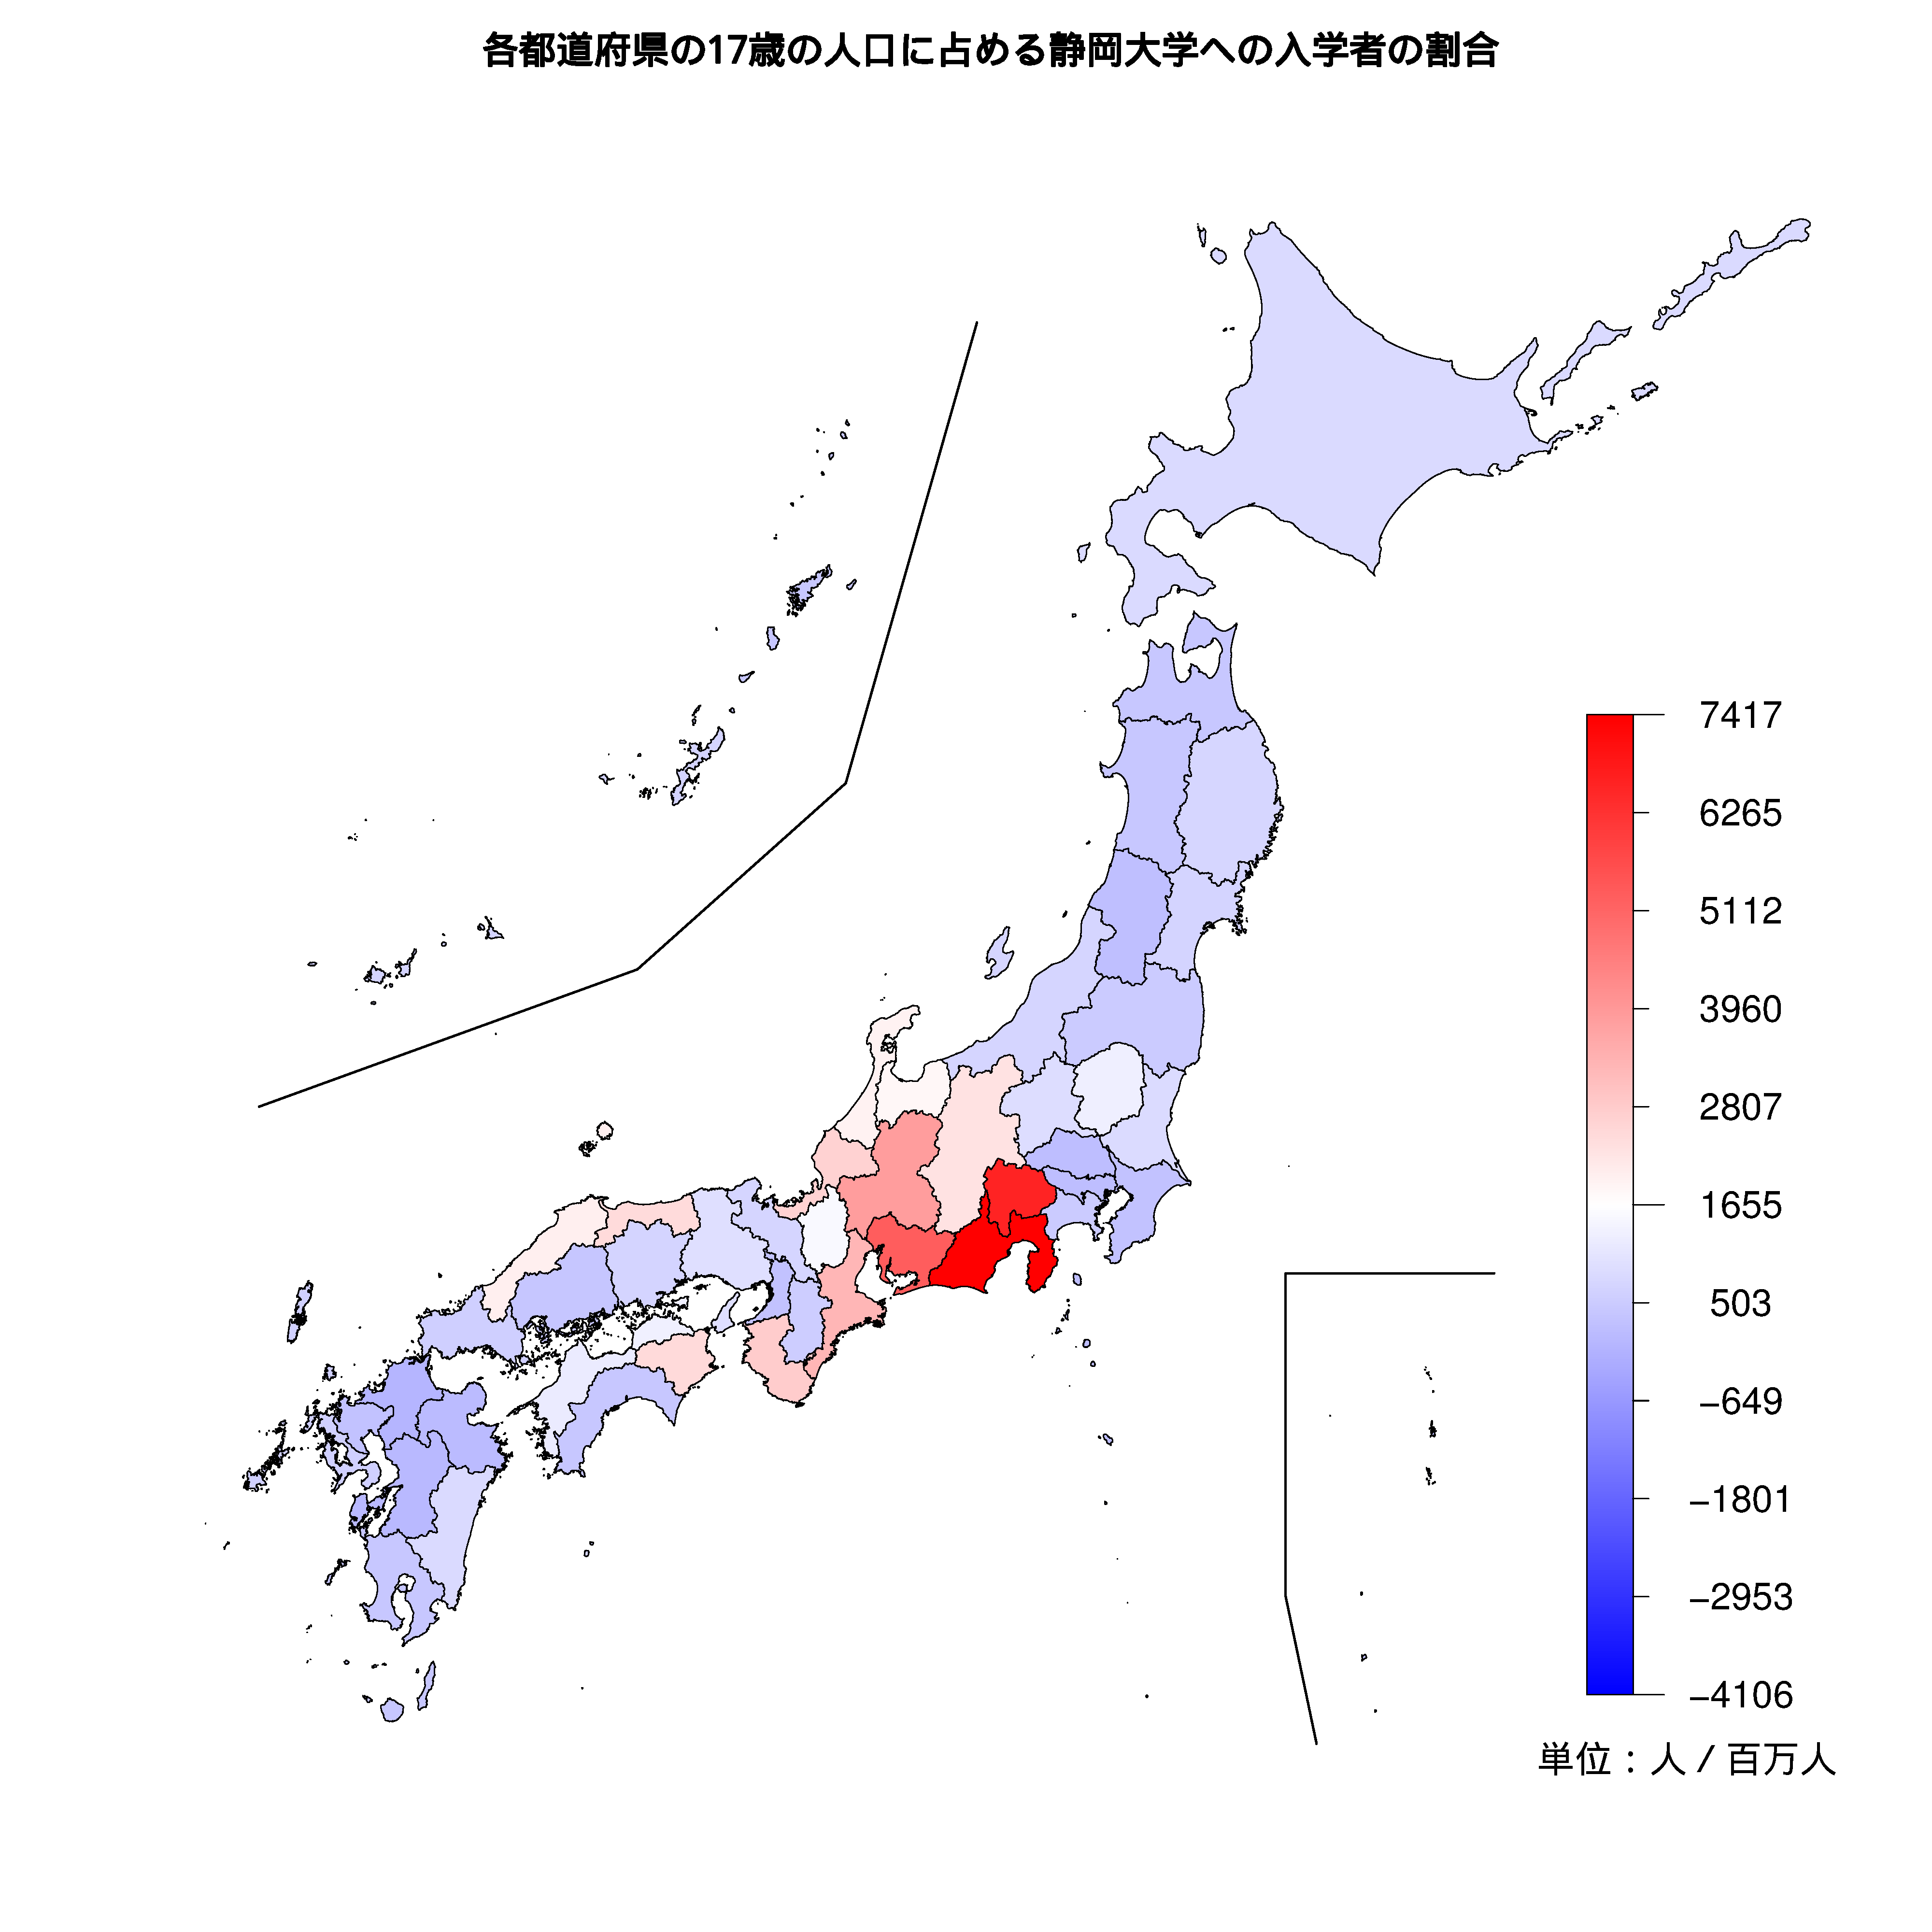 静岡大学への入学者が多い都道府県の色分け地図